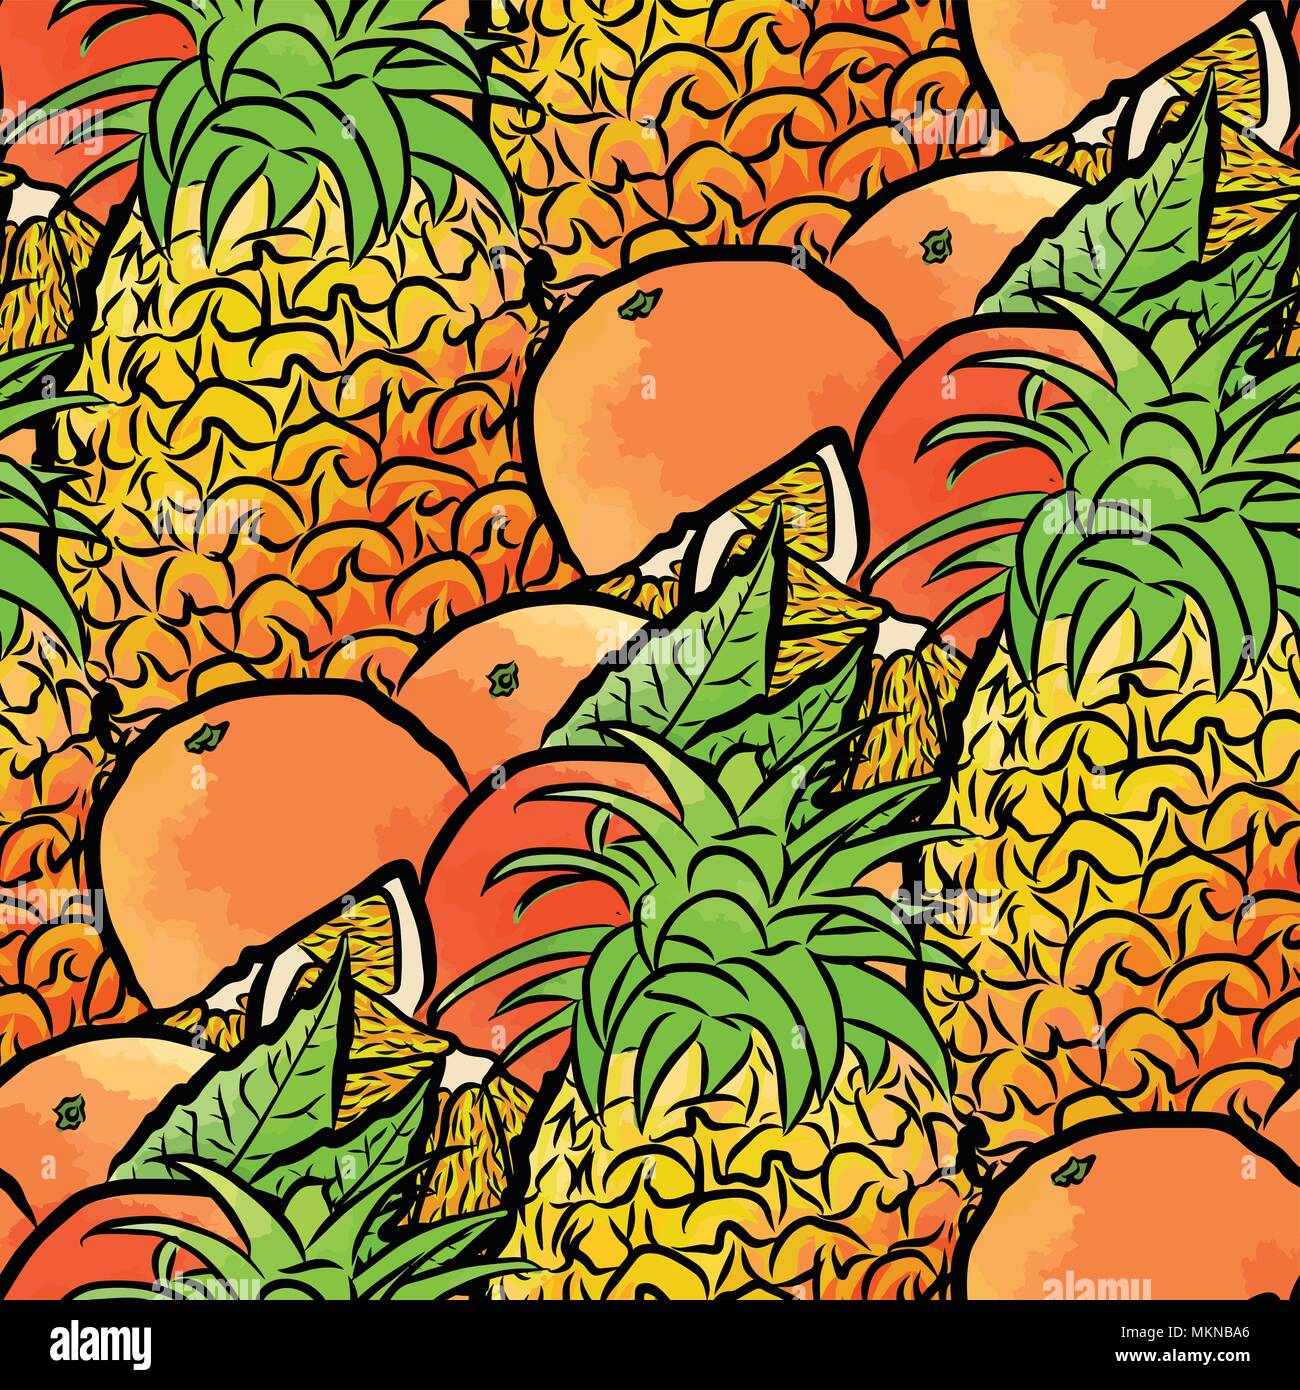 Vektor nahtlose Muster von Ananas und Orangen. Von Hand gezeichnet und farbige Abbildung Stock Vektor